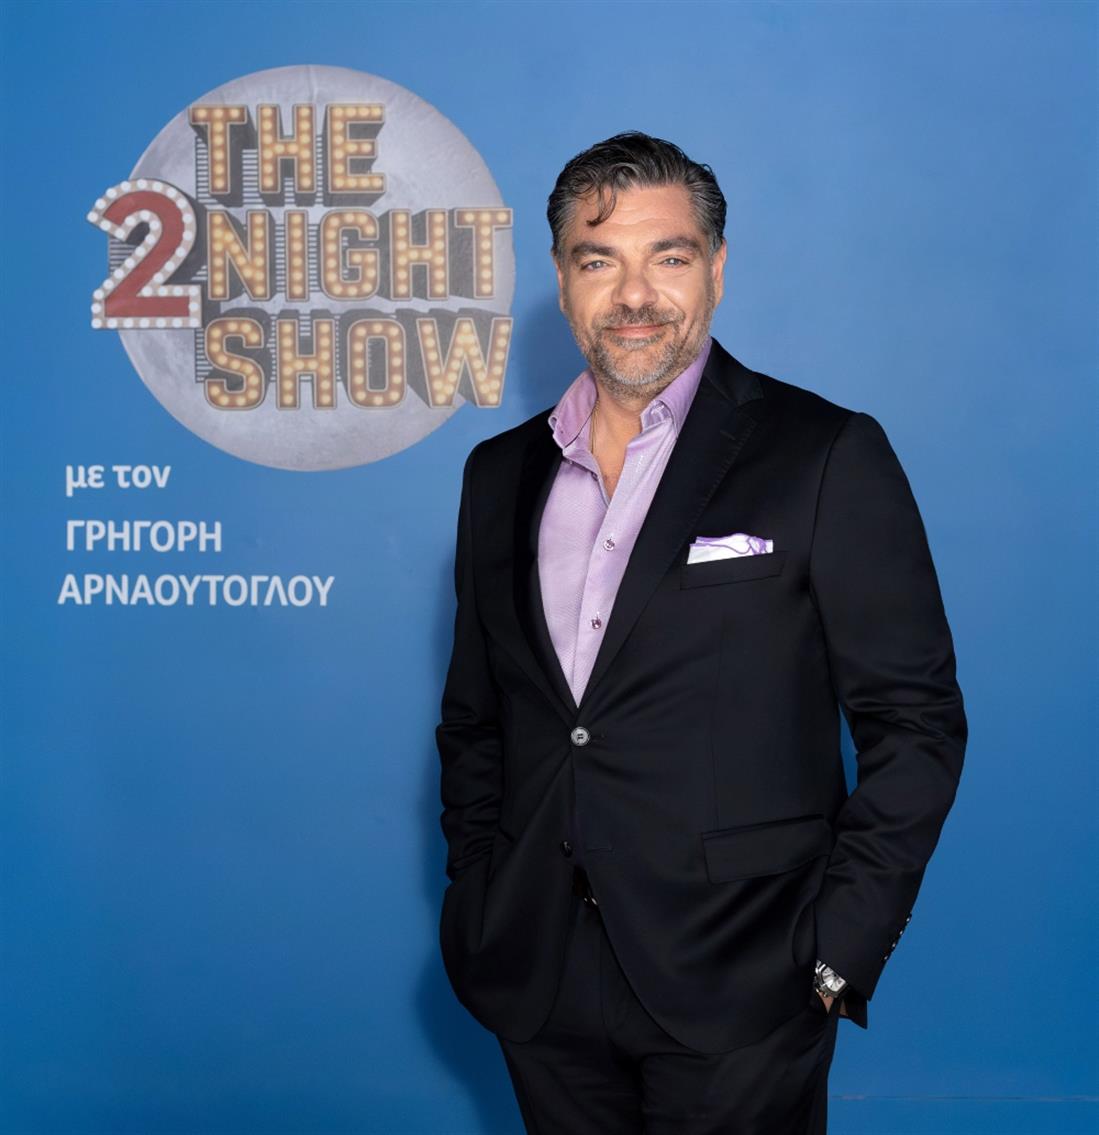 Δημήτριος Μάλλιος - The 2Night Show